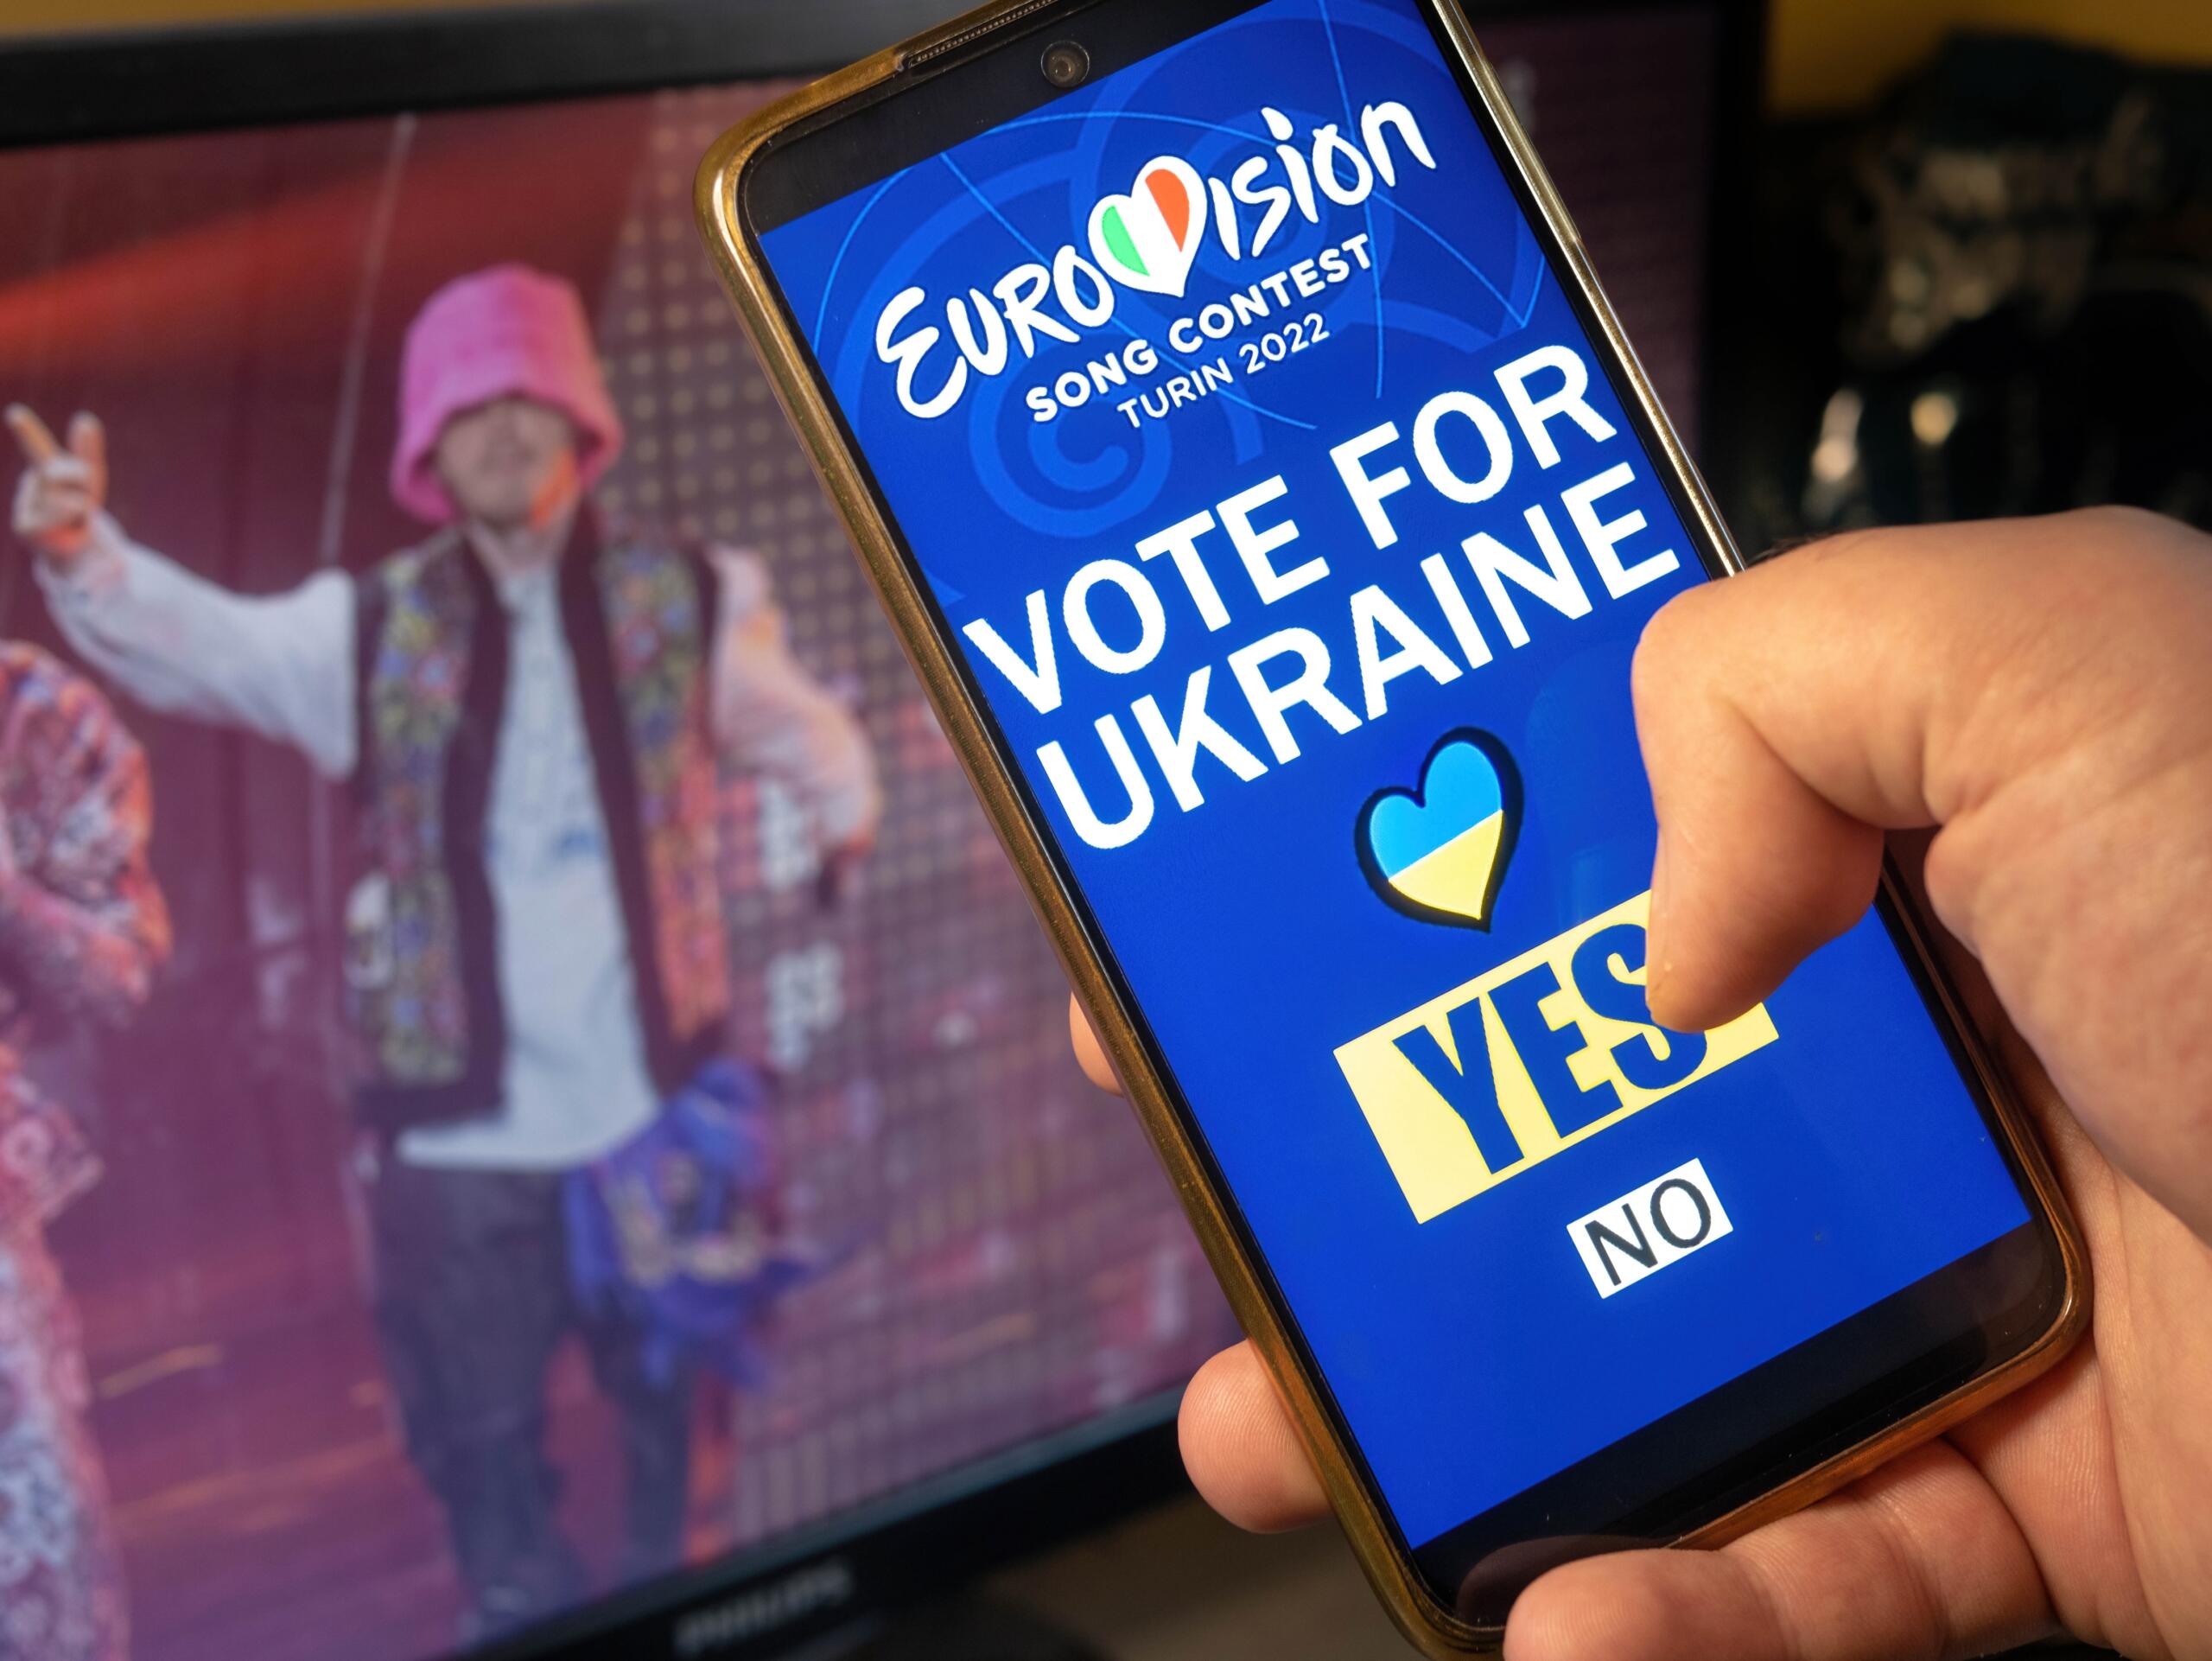 L'Italia ha promosso l'Eurovision Song Contest con ascolti record, schierandosi per la vittoria dell'Ucraina